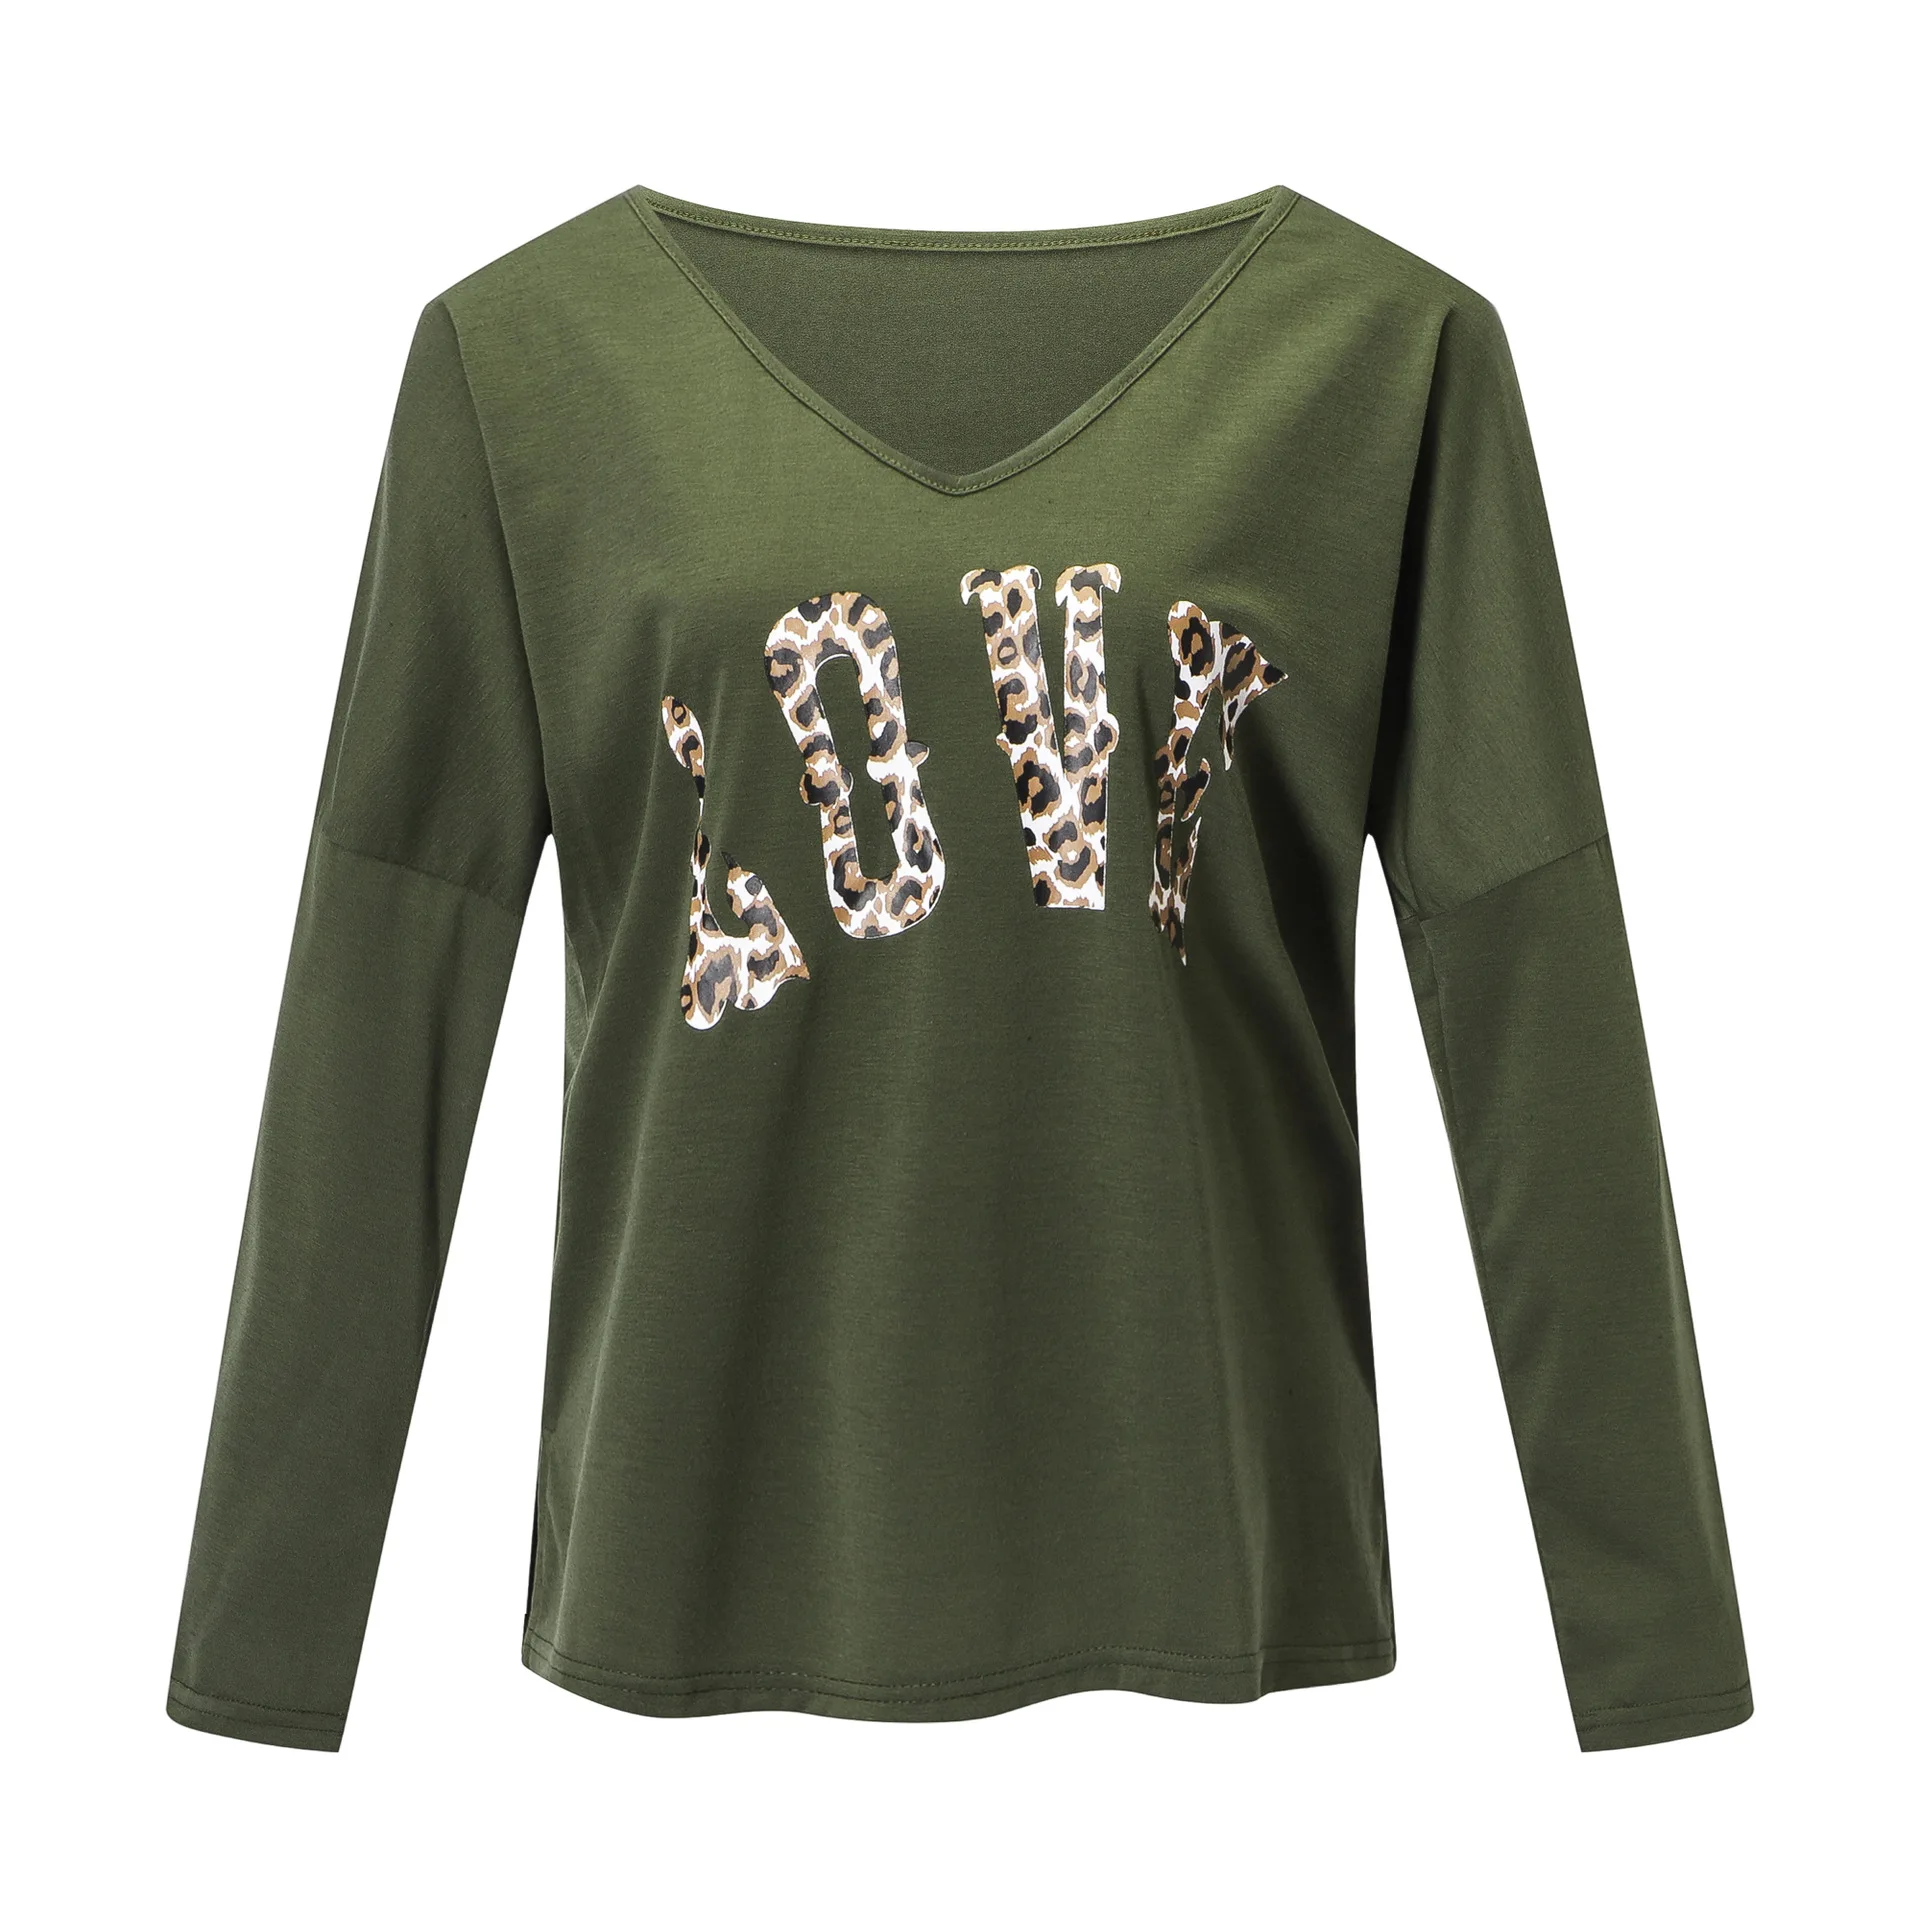 Новинка, Модные леопардовые футболки с буквенным принтом, Женские топы с v-образным вырезом, повседневные свободные пуловеры с длинными рукавами, рубашки, осень, SJ820U - Цвет: Армейский зеленый